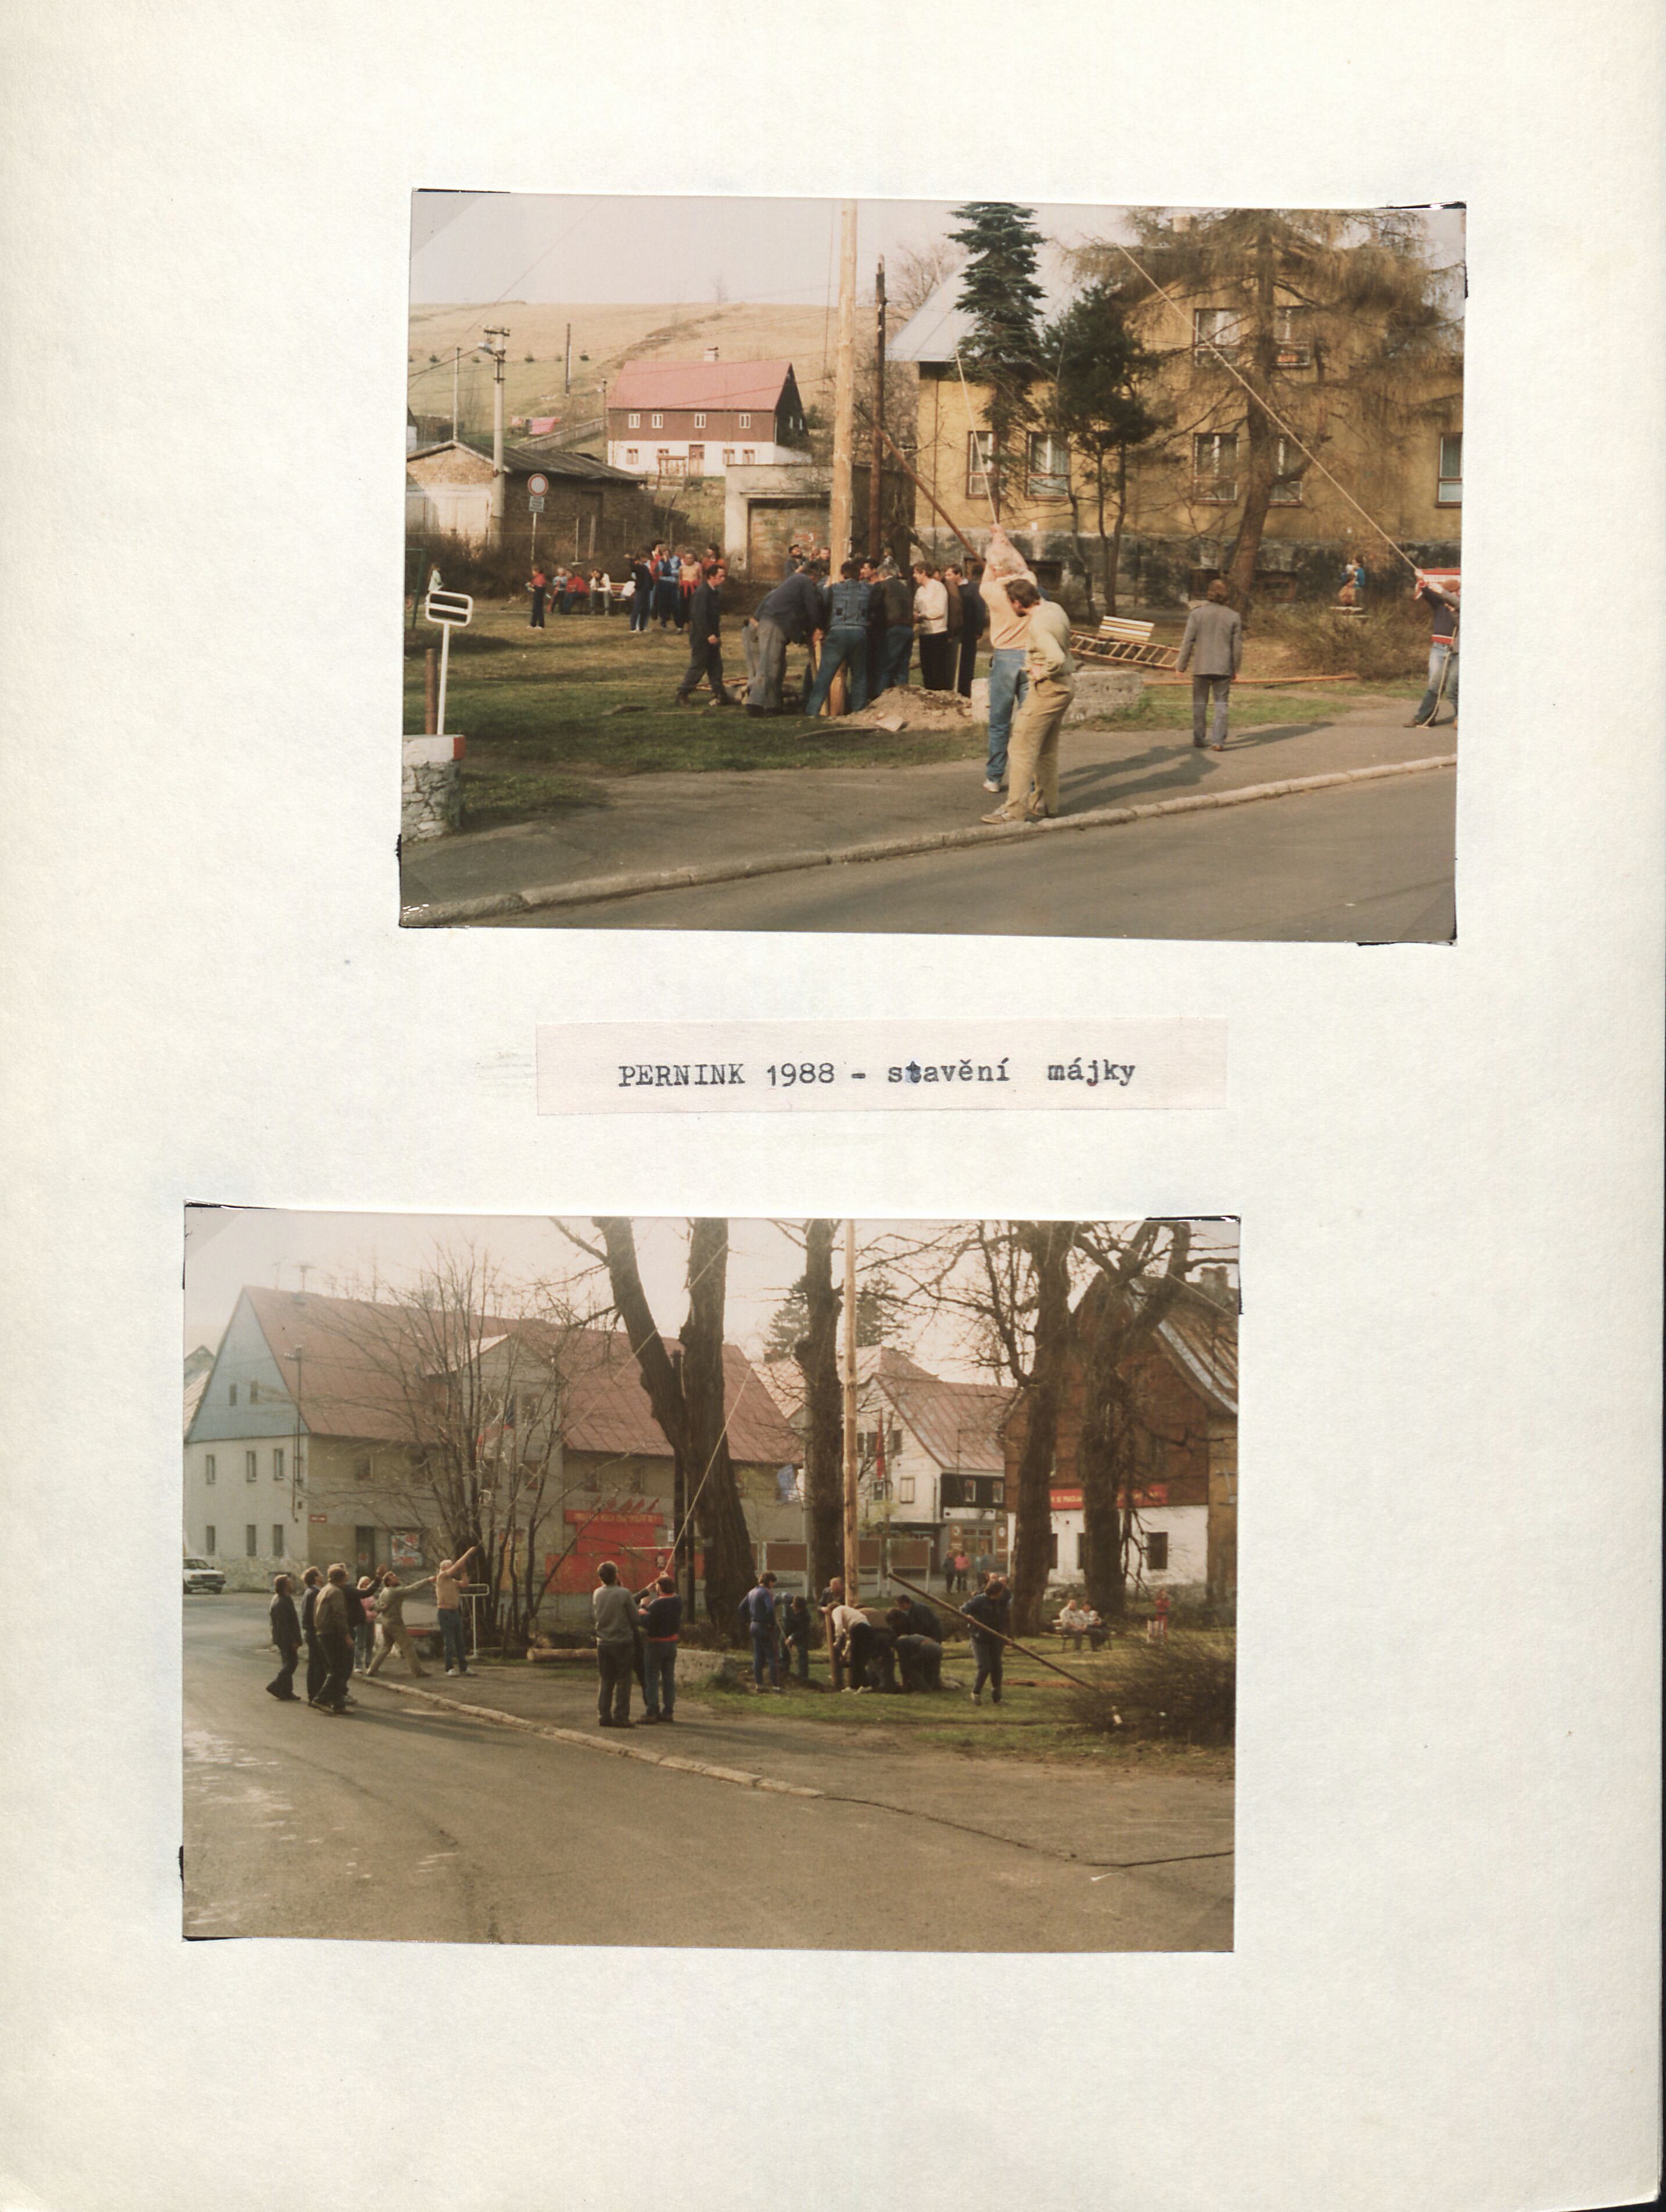 31. soap-kv_00286_obec-pernink-fotoalbum-1988_0320